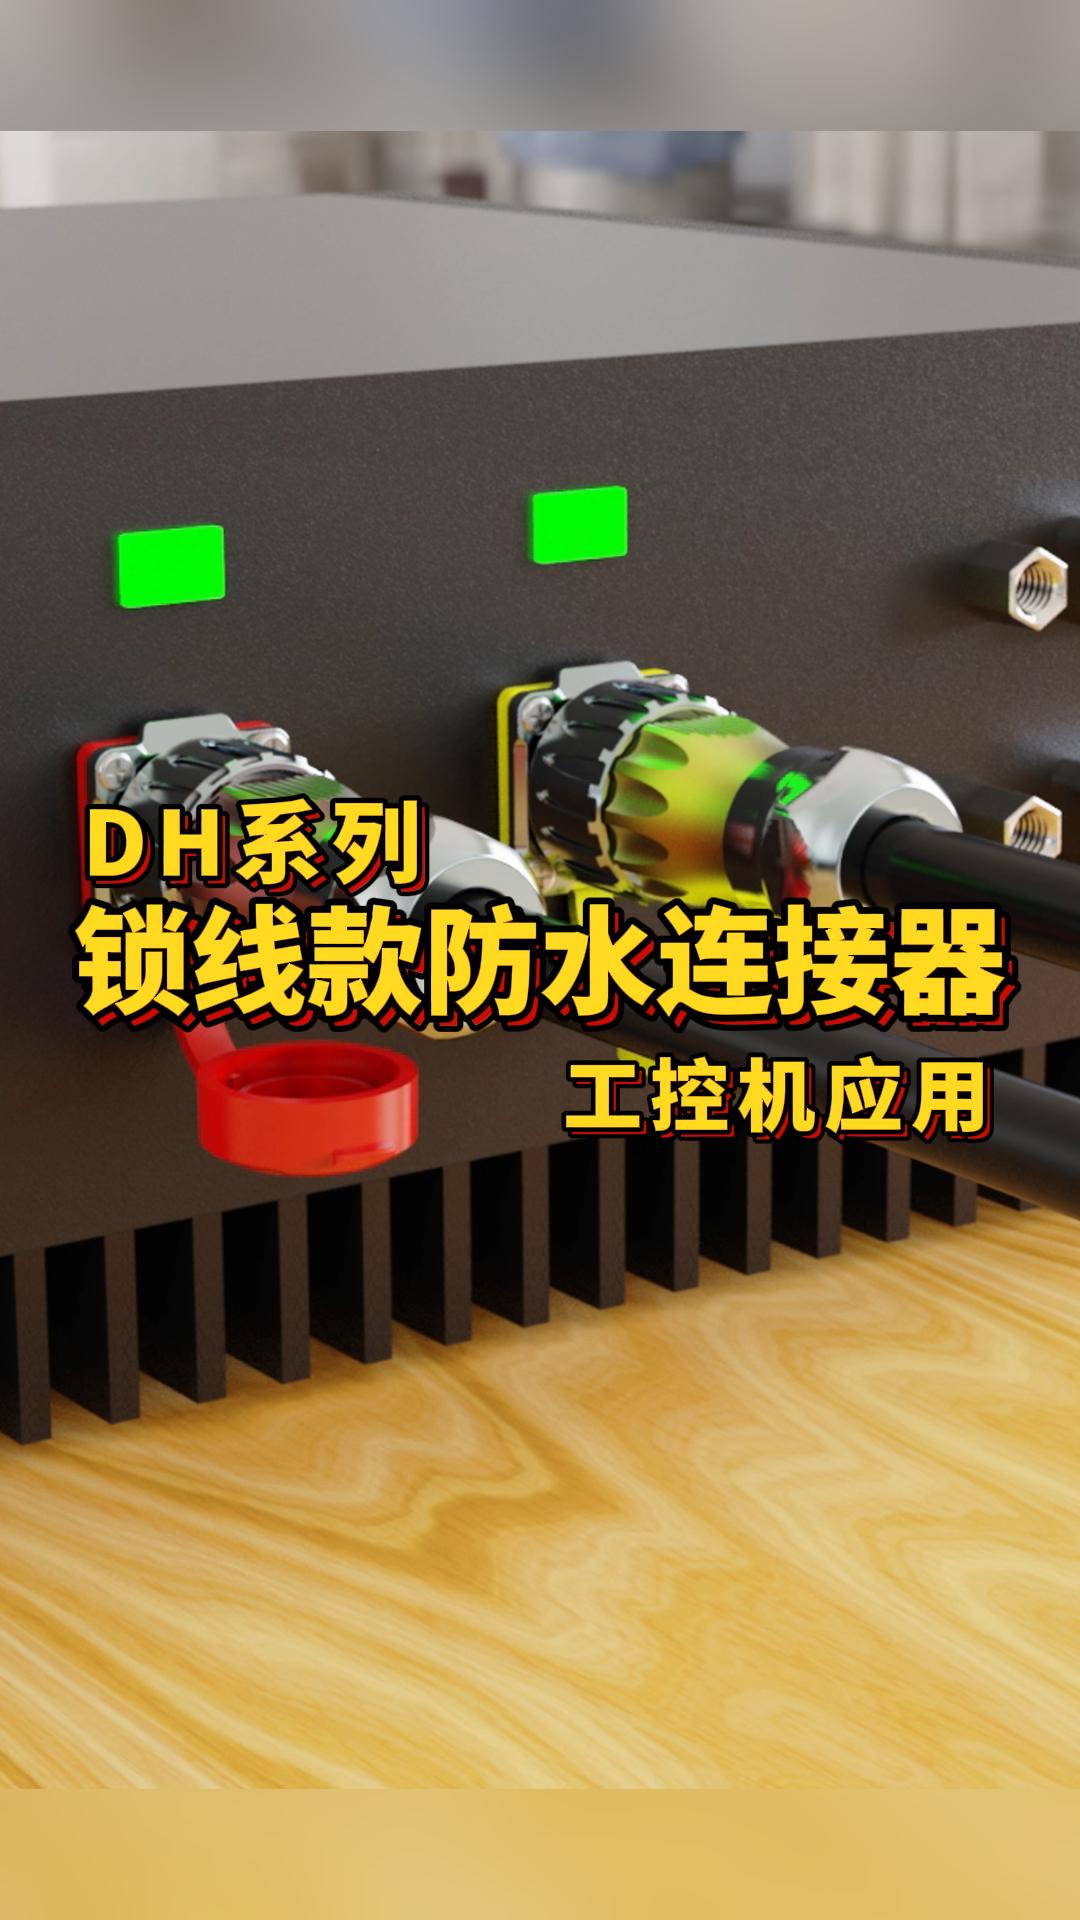 凌科電氣DH系列鎖線款防水連接器適配工控機設備：鎖線安裝，接線更方便快捷！#連接器 #防水連接器 #工控機 